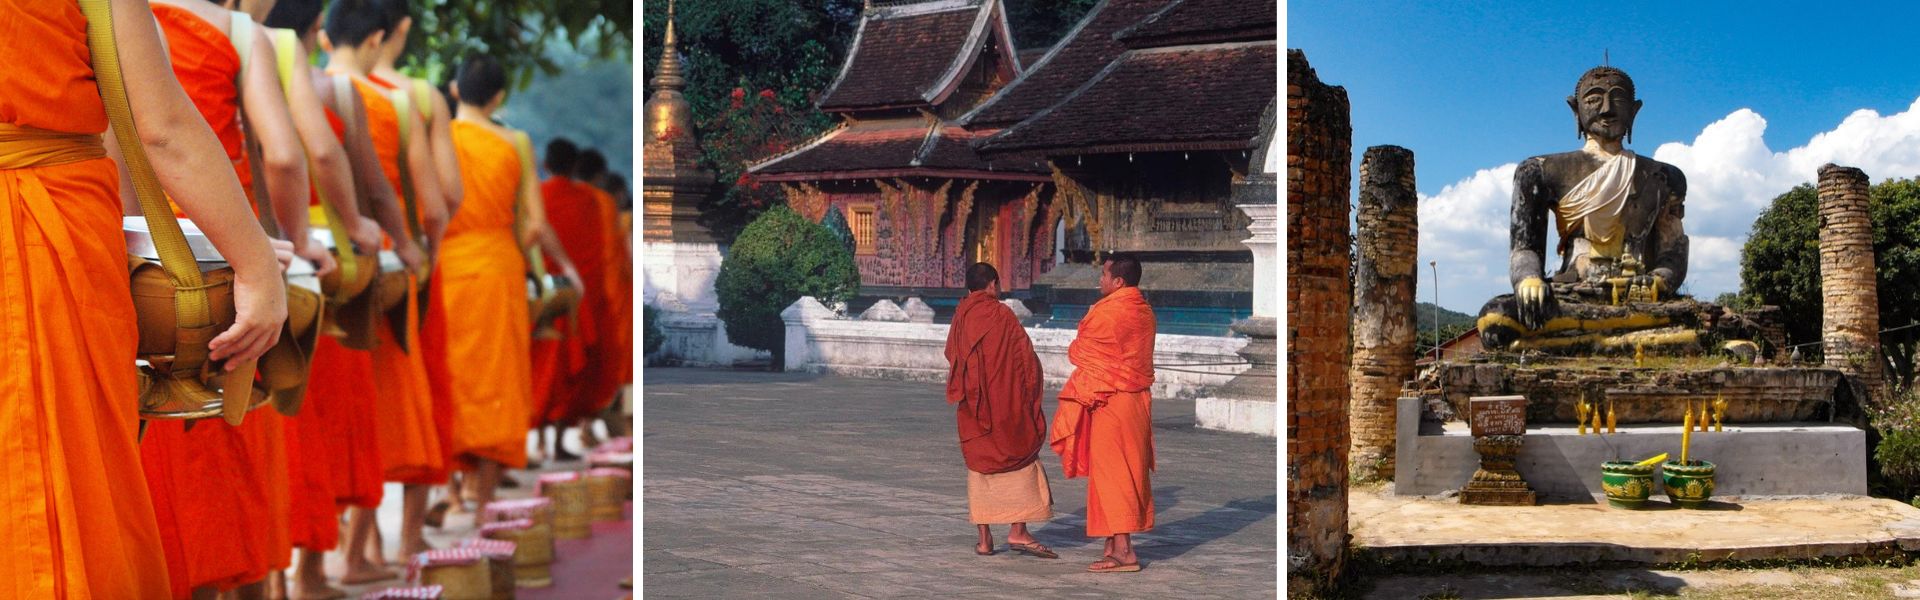 Religiões no Laos